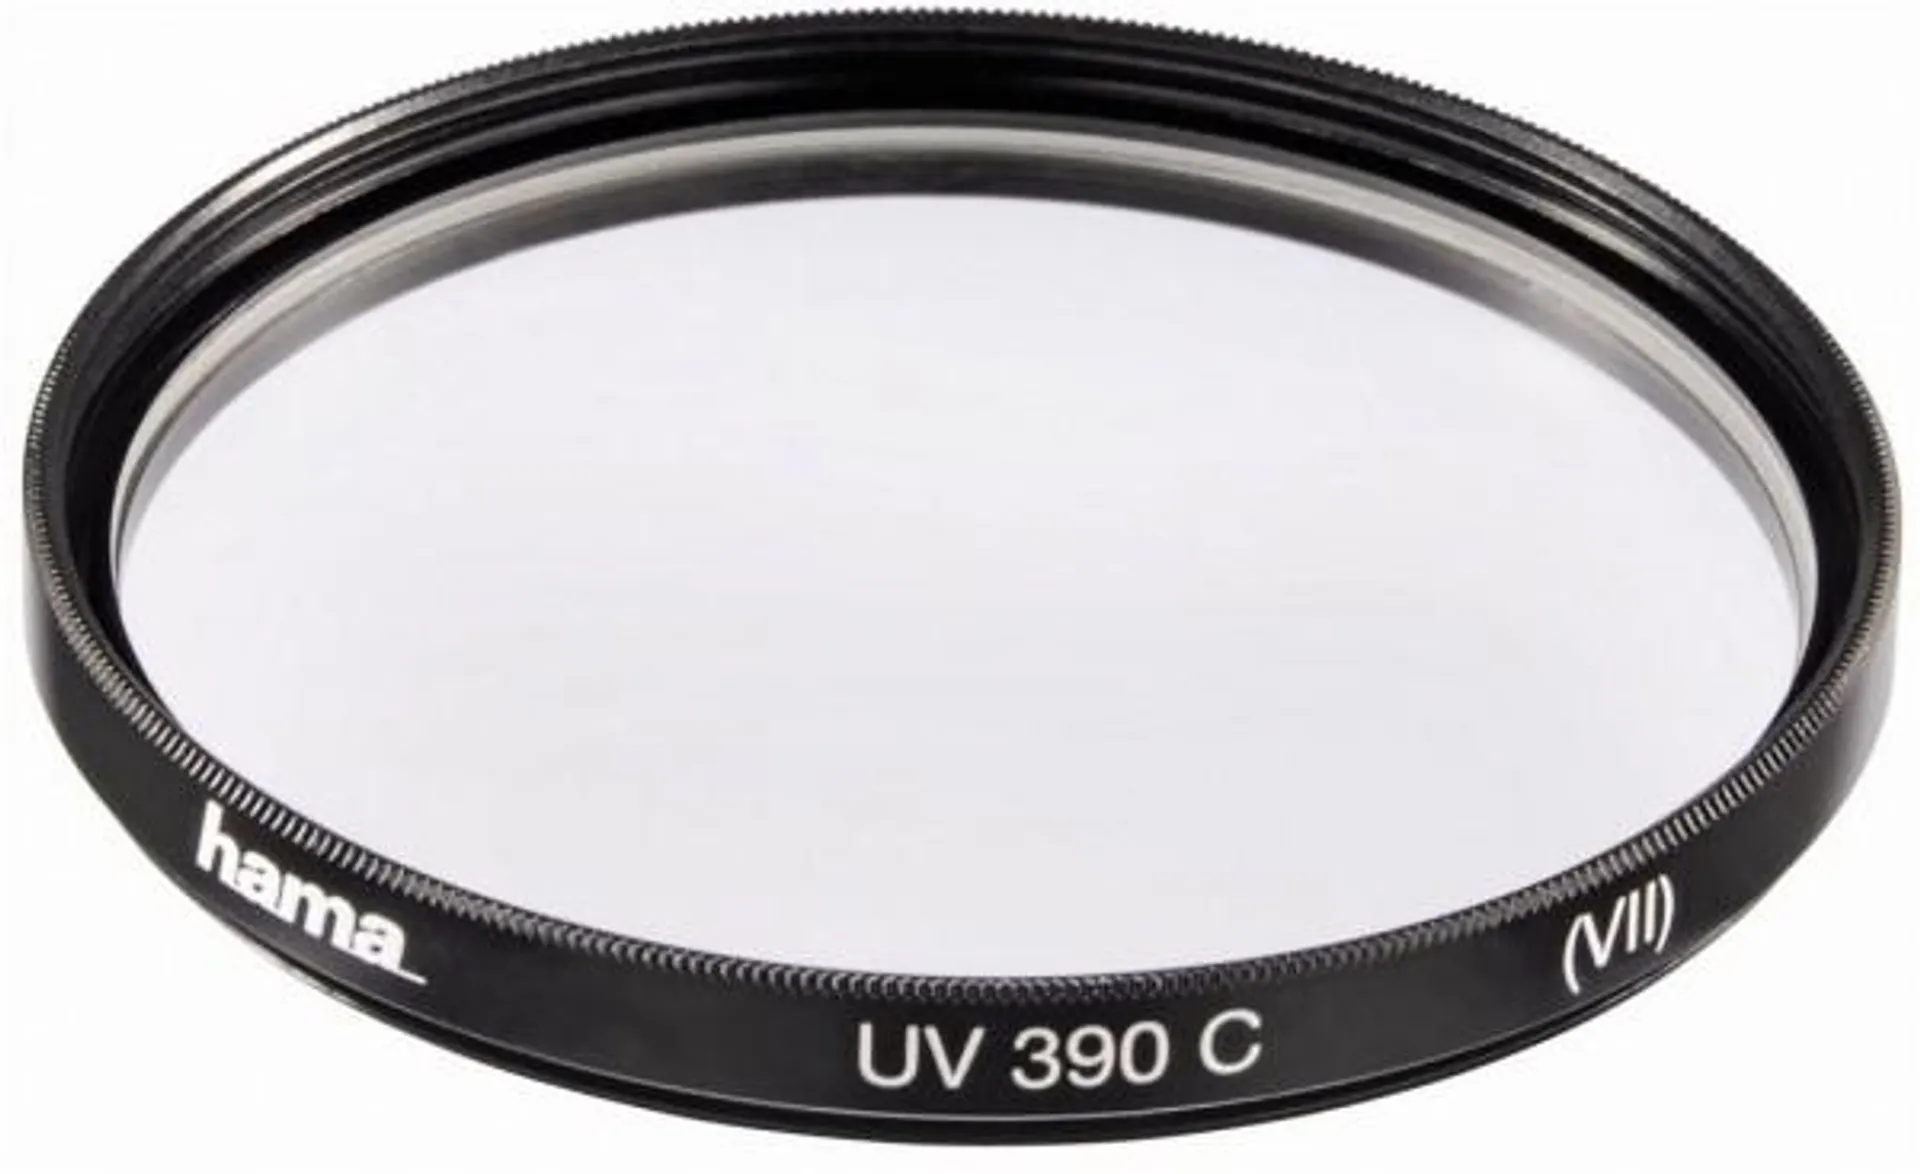 Hama UV-390, vergütet, 72mm Filter